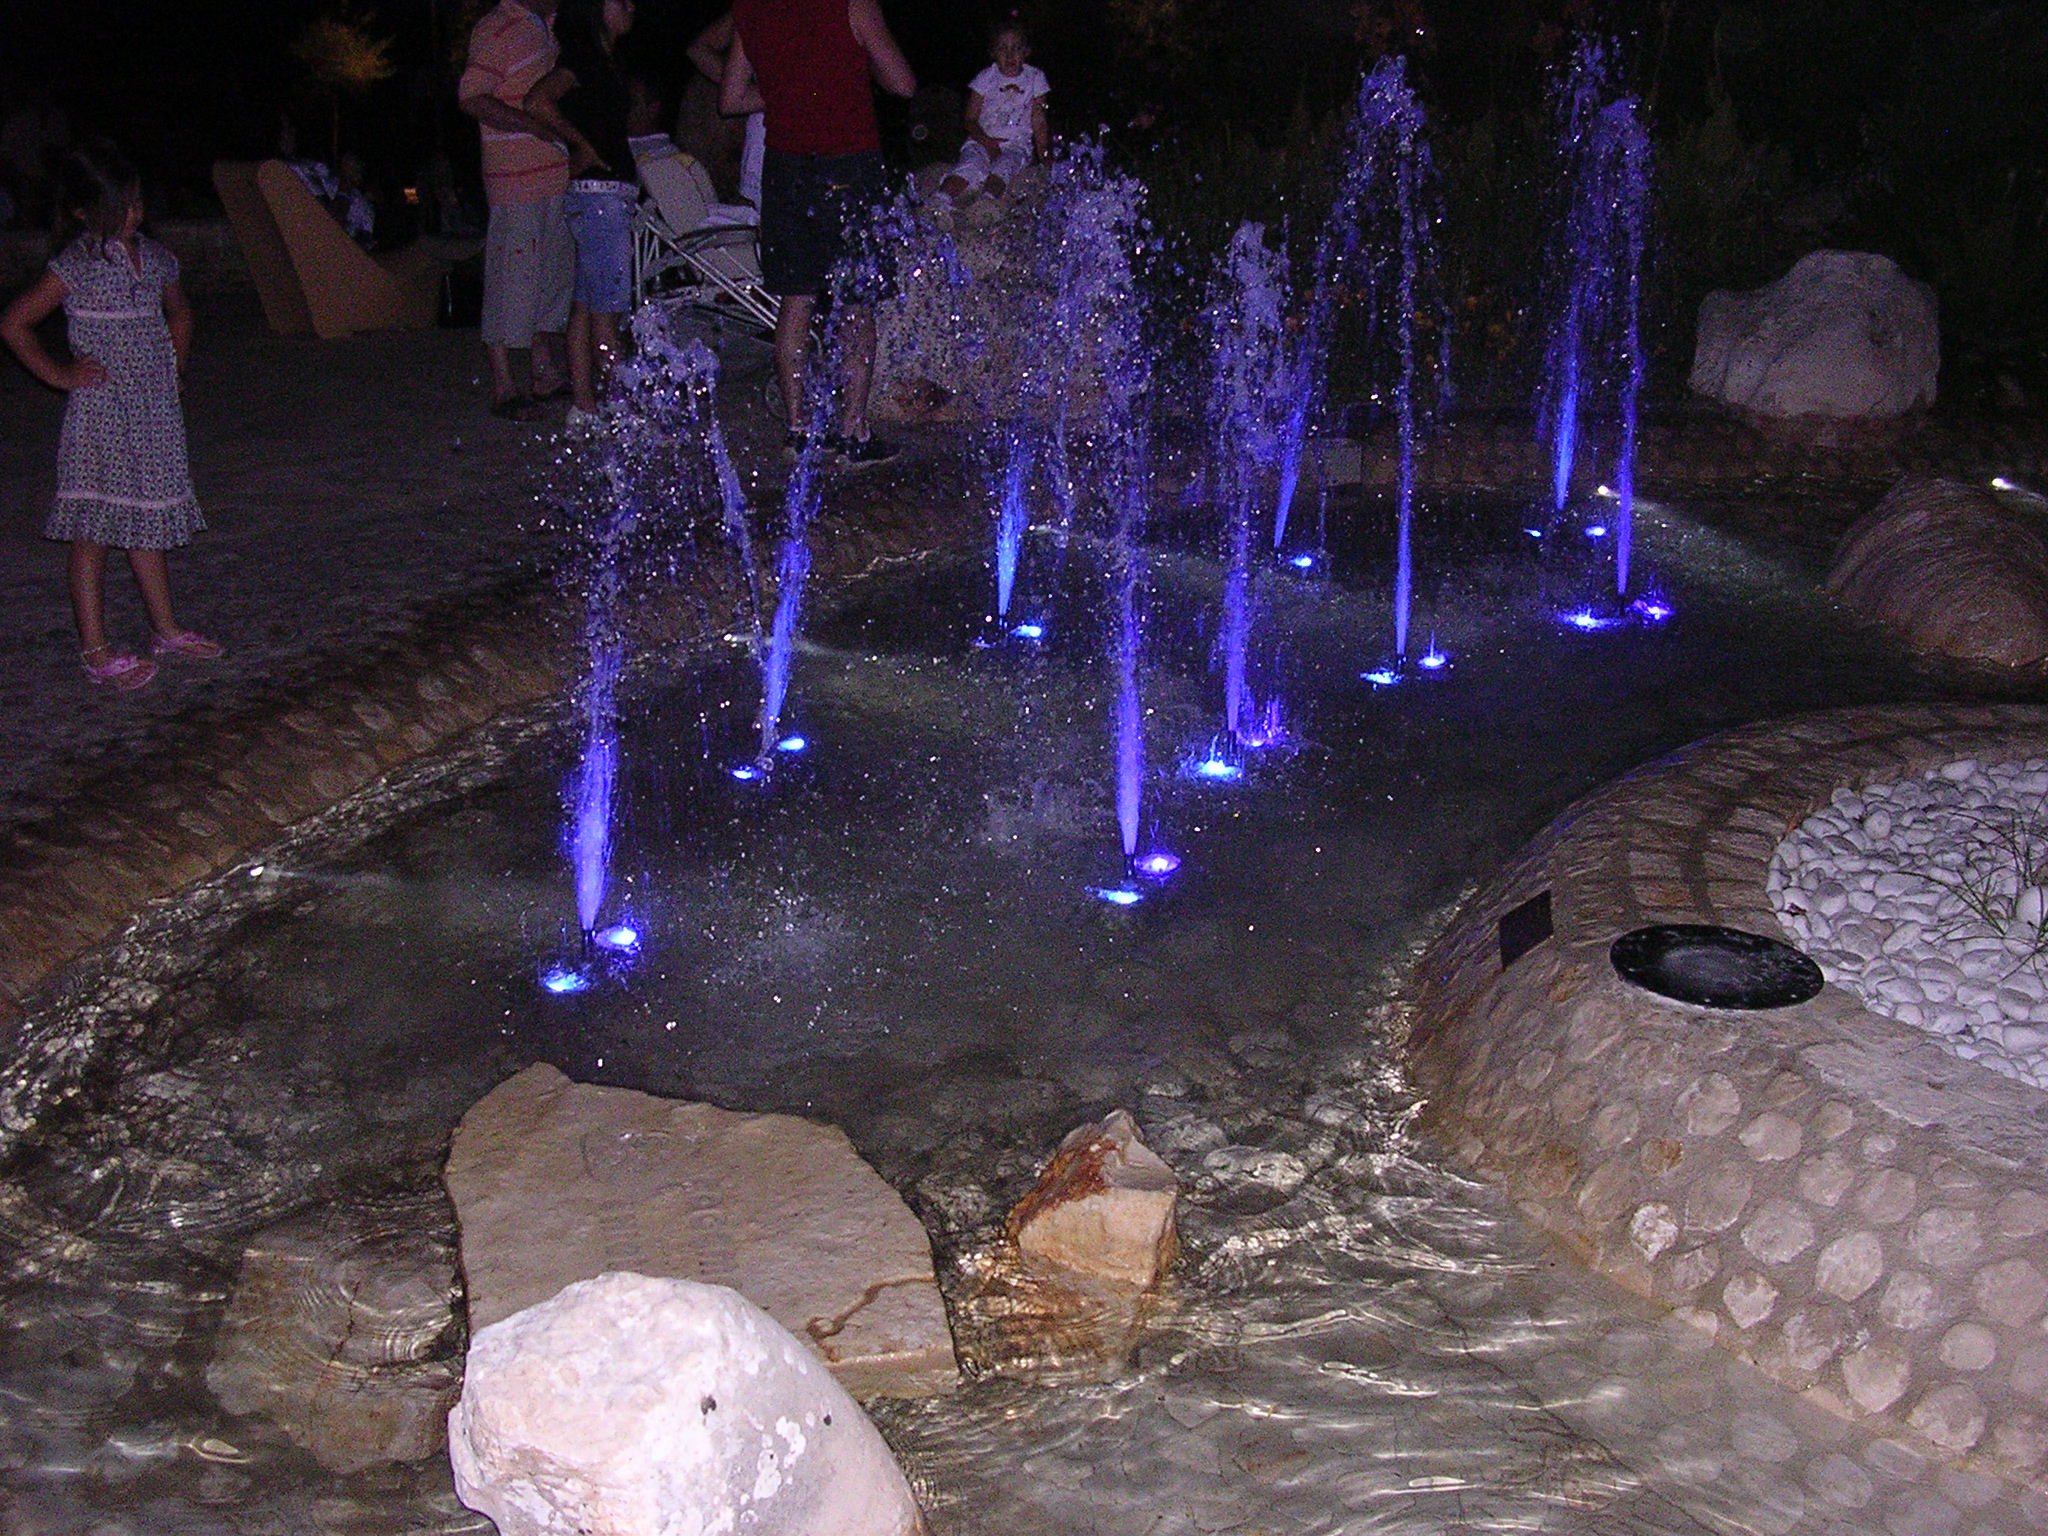 San Benedetto del Tronto: illuminated fountains....